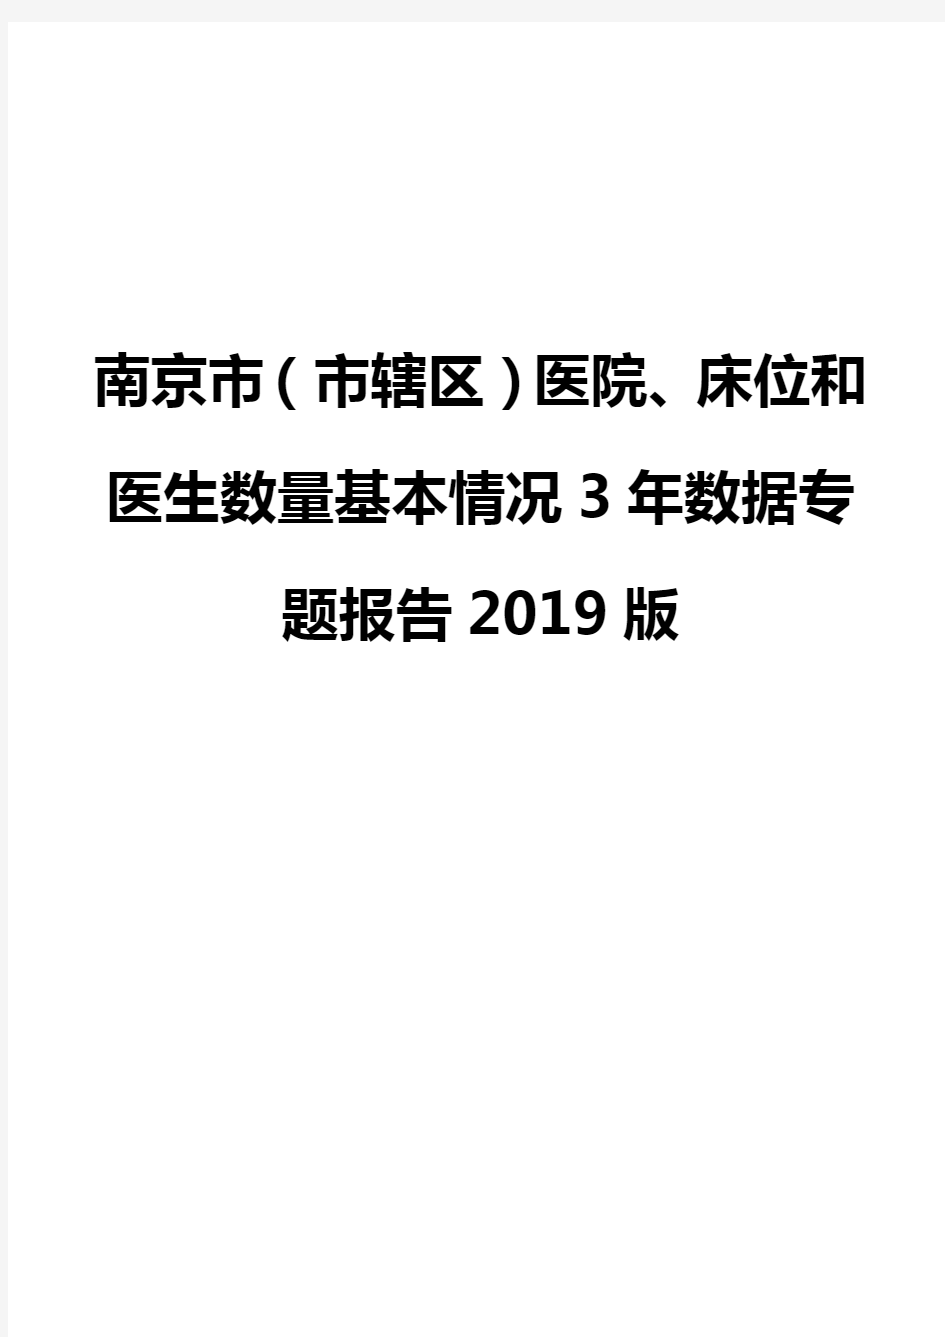 南京市(市辖区)医院、床位和医生数量基本情况3年数据专题报告2019版